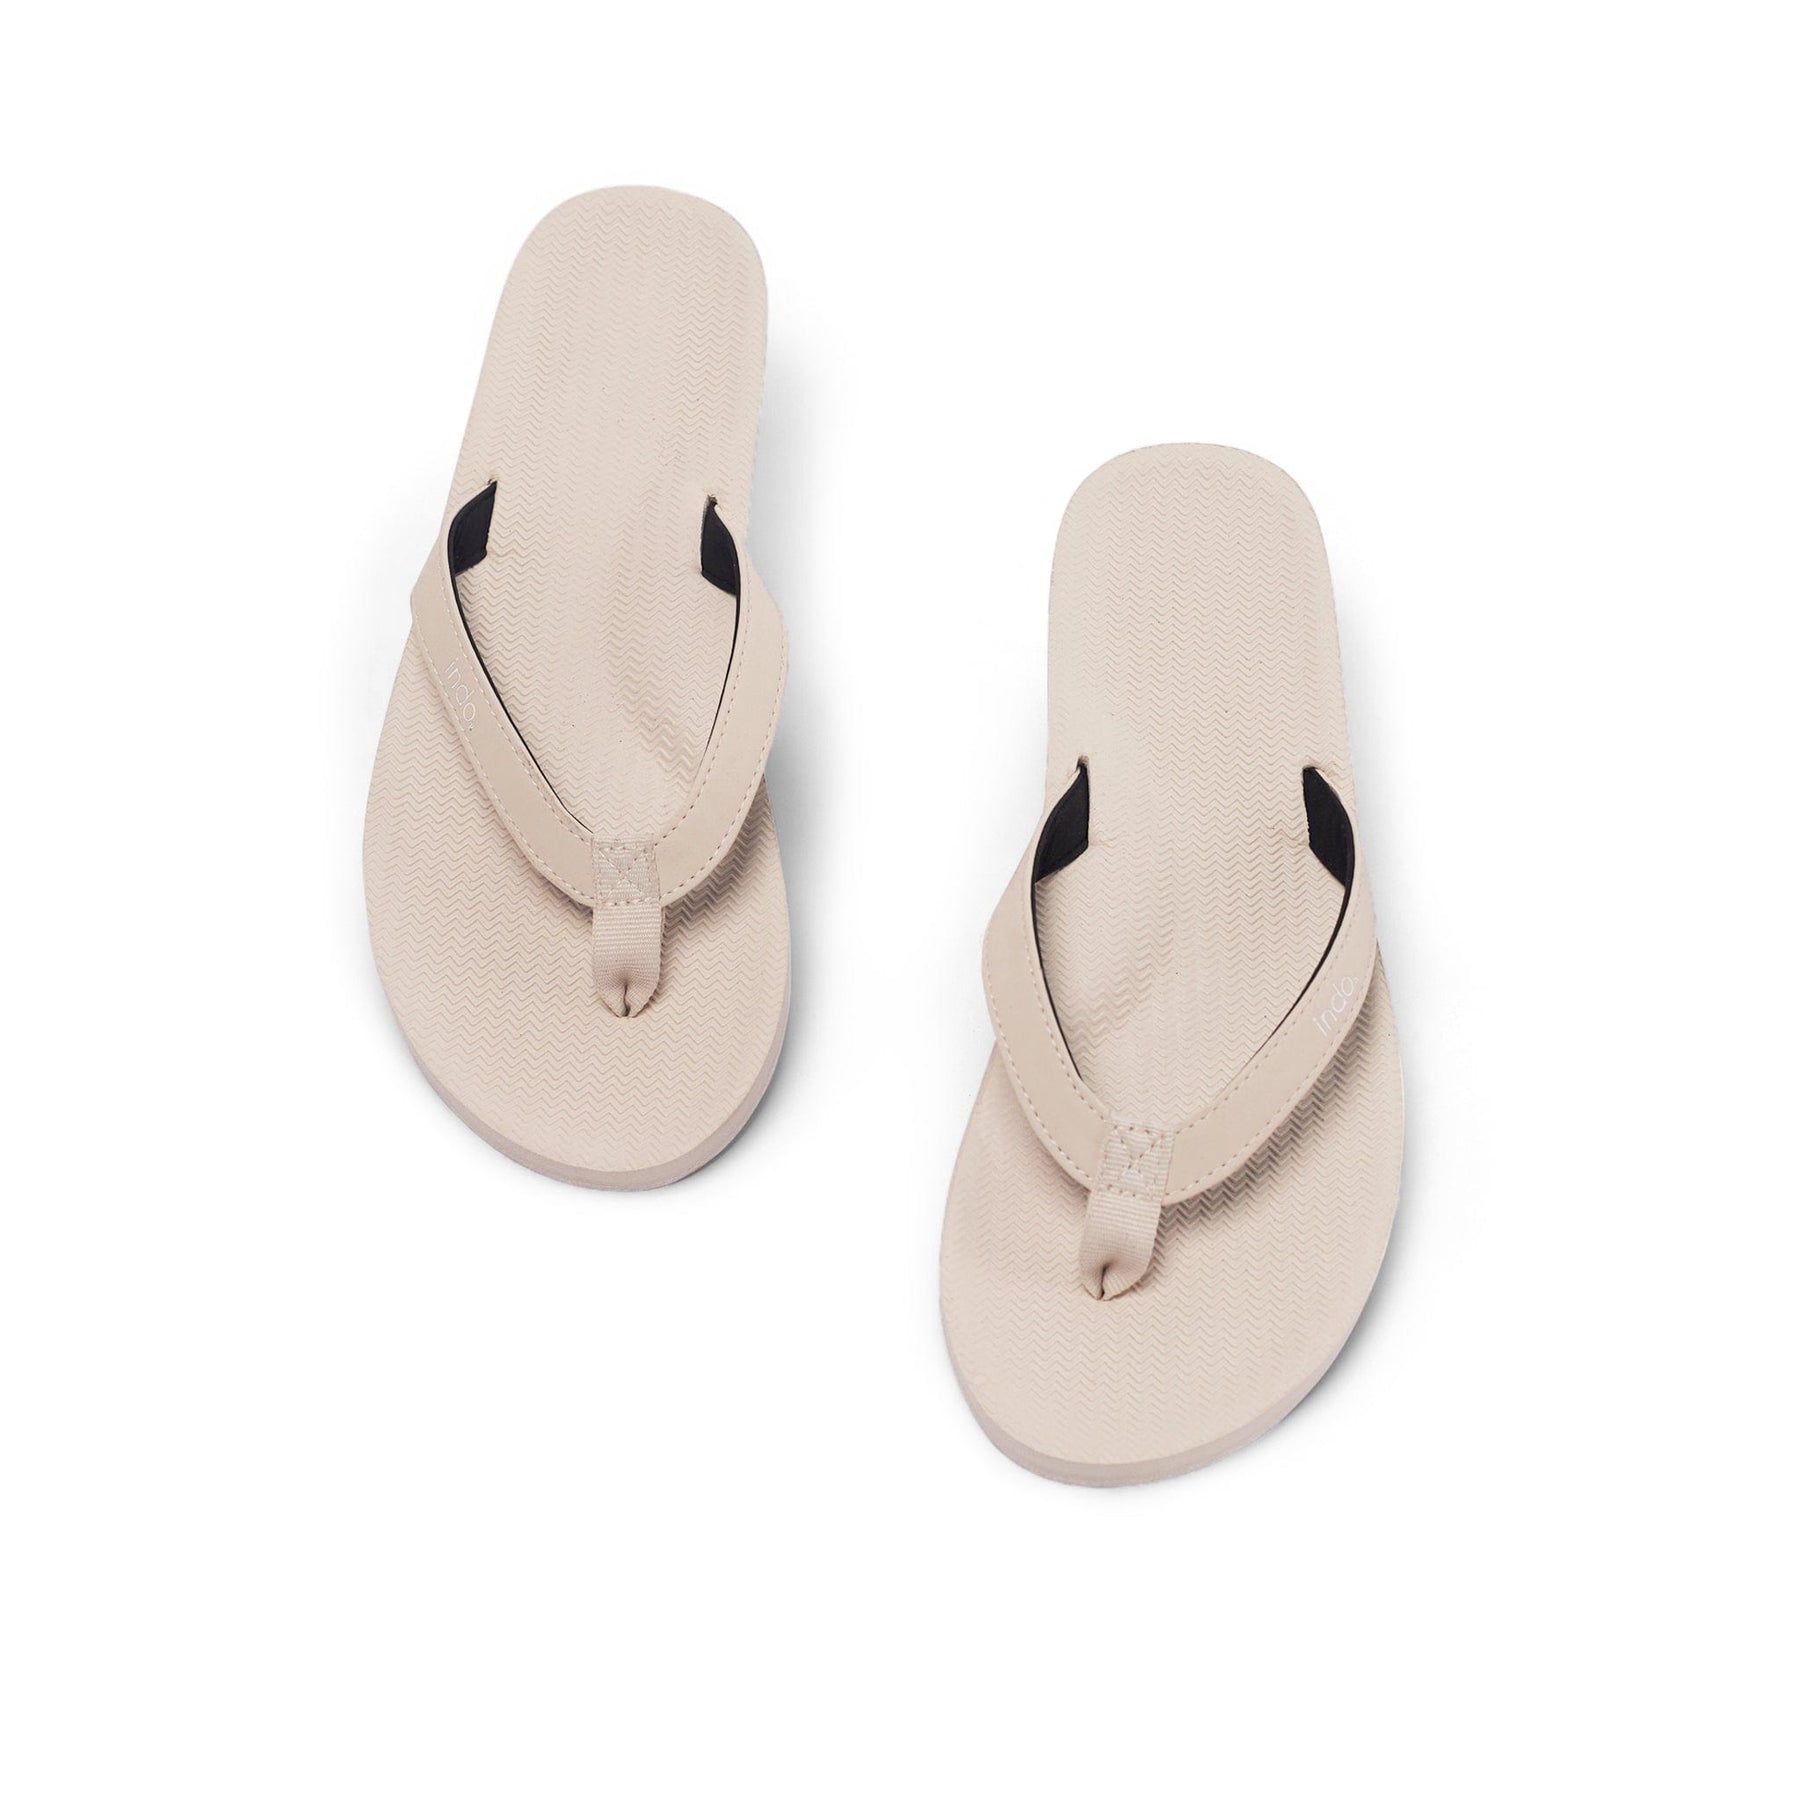 Women's Flip Flops Sneaker Sole - Sea Salt/Sea Salt Sole - Indosole